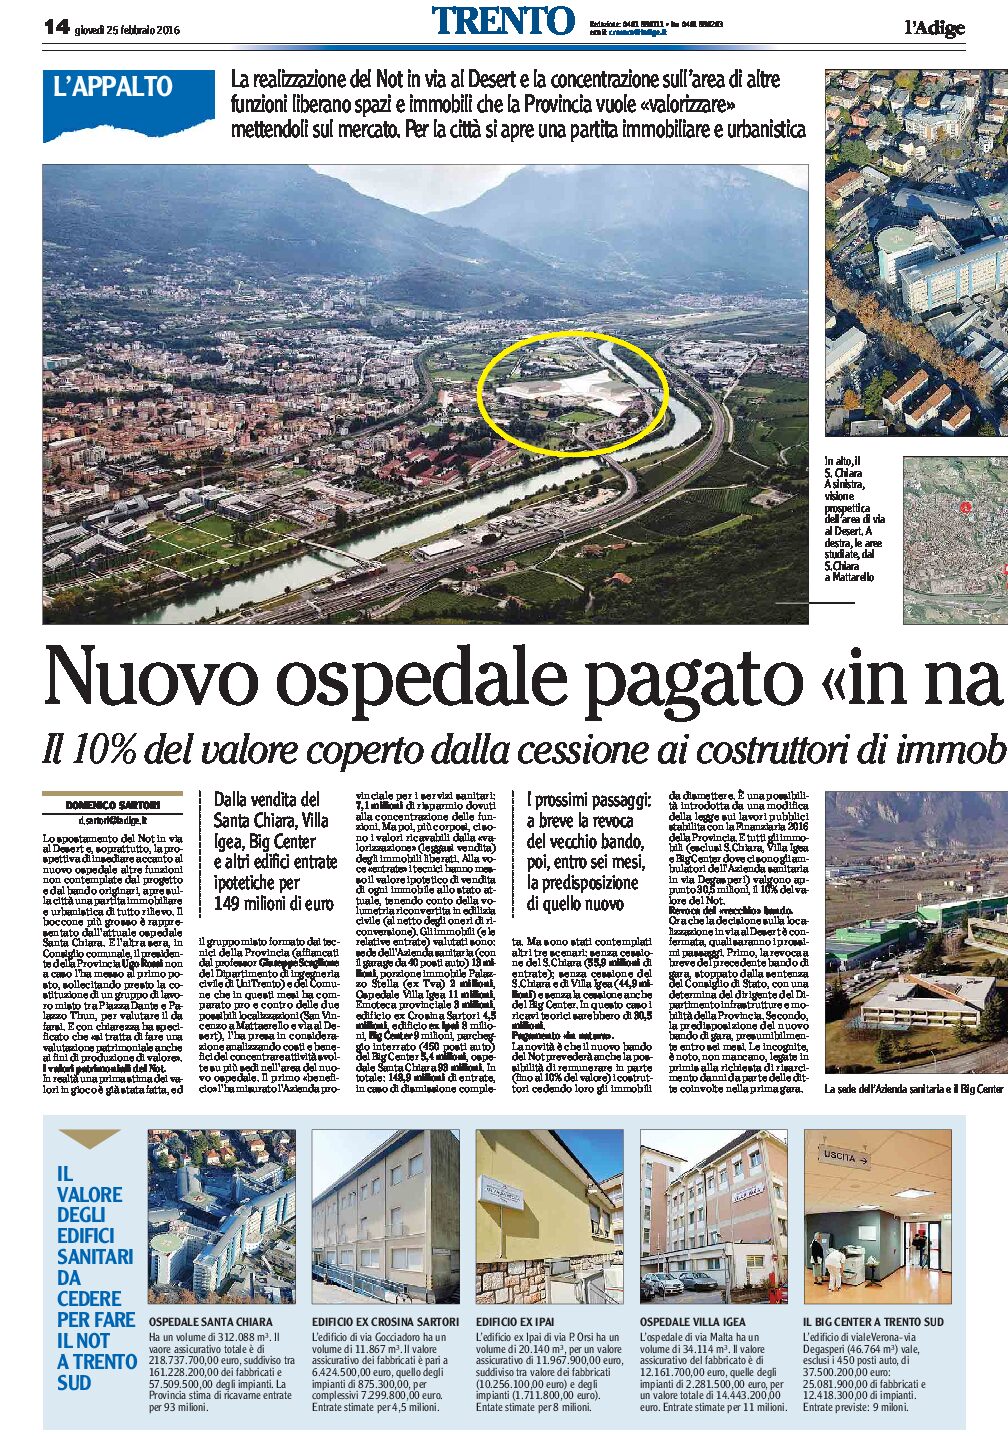 Trento, Not: nuovo ospedale pagato “in natura”